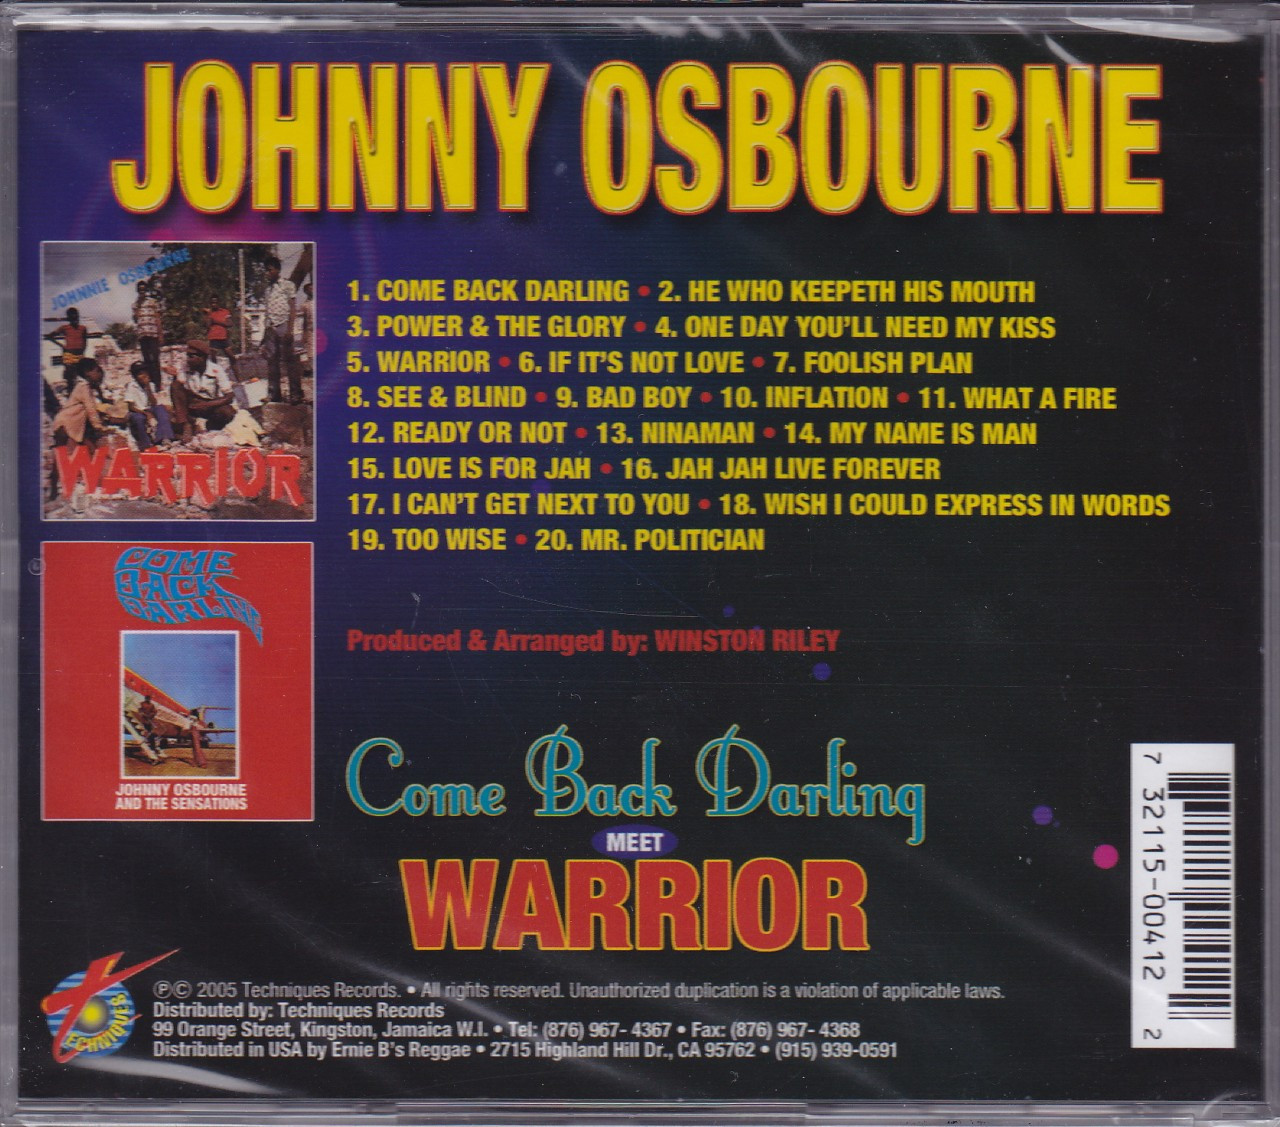 Johnny Osbourne : Come Back Darling Meets Warrior CD - Reggae Land